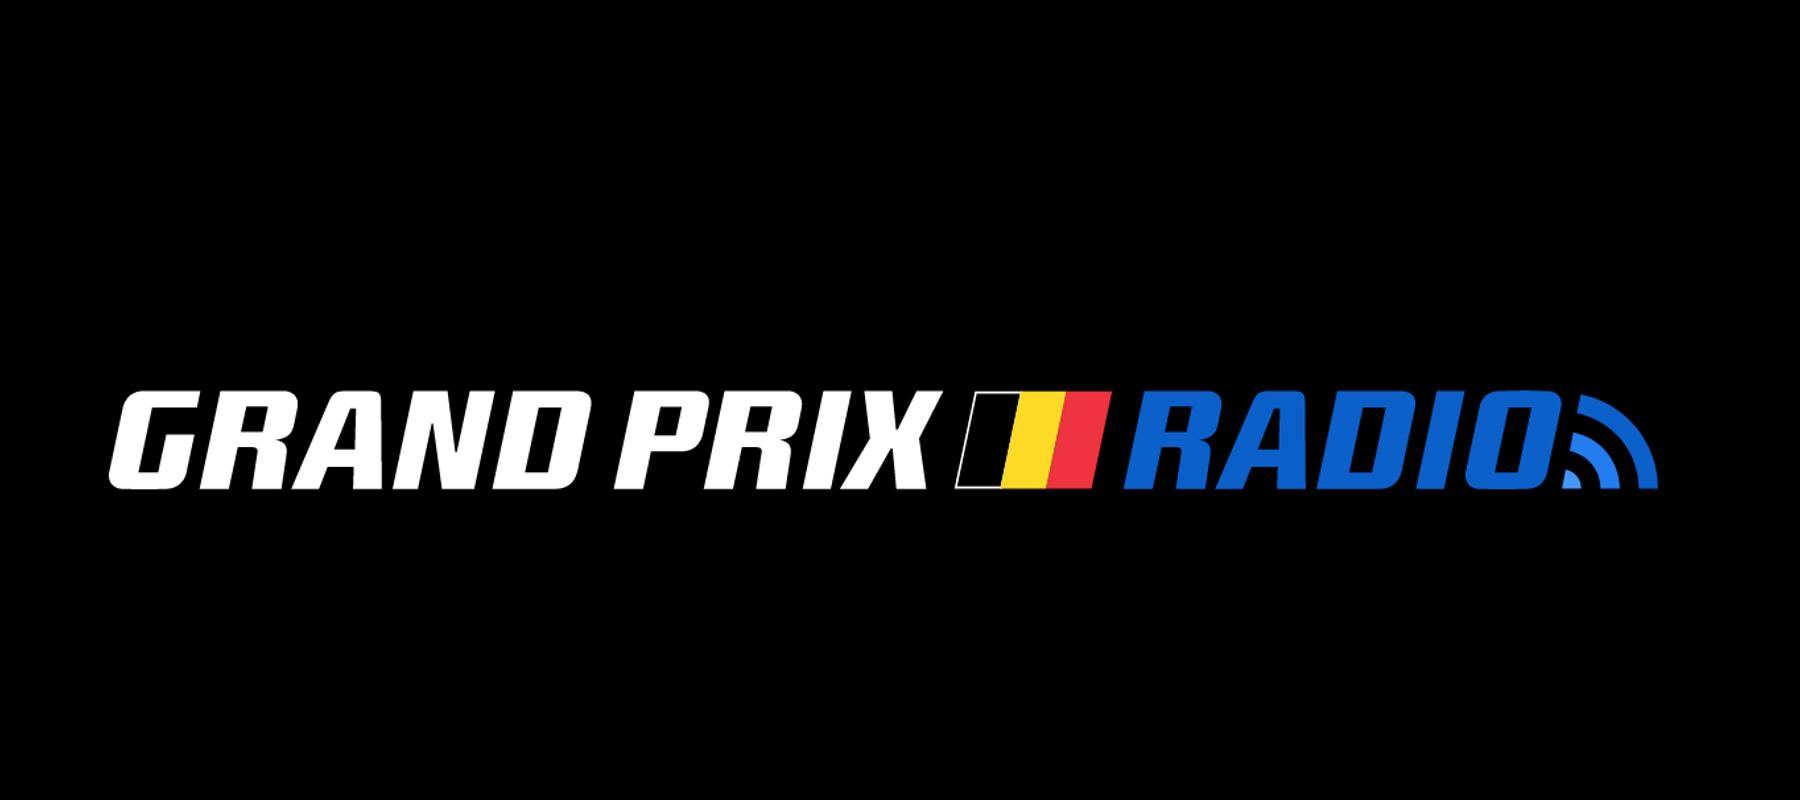 Verbinding fort stap in Grand Prix Radio verhuist naar België - Marketing Report